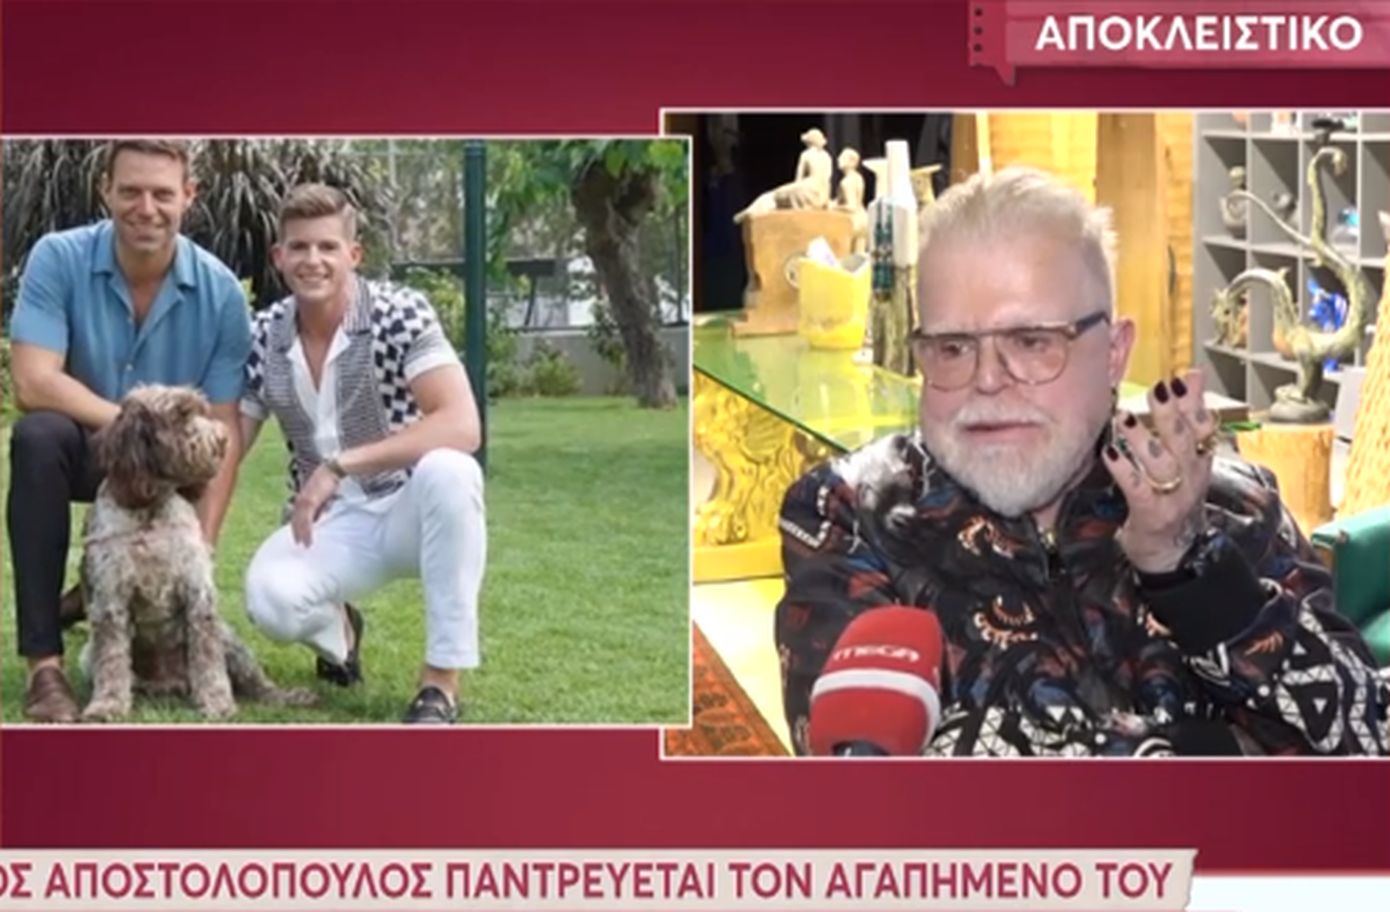 Ο Νίκος Αποστολόπουλος παντρεύεται τον αγαπημένο του το καλοκαίρι &#8211; «Εγώ έκανα την πρόταση γάμου, εγώ είμαι ο κυνηγός»